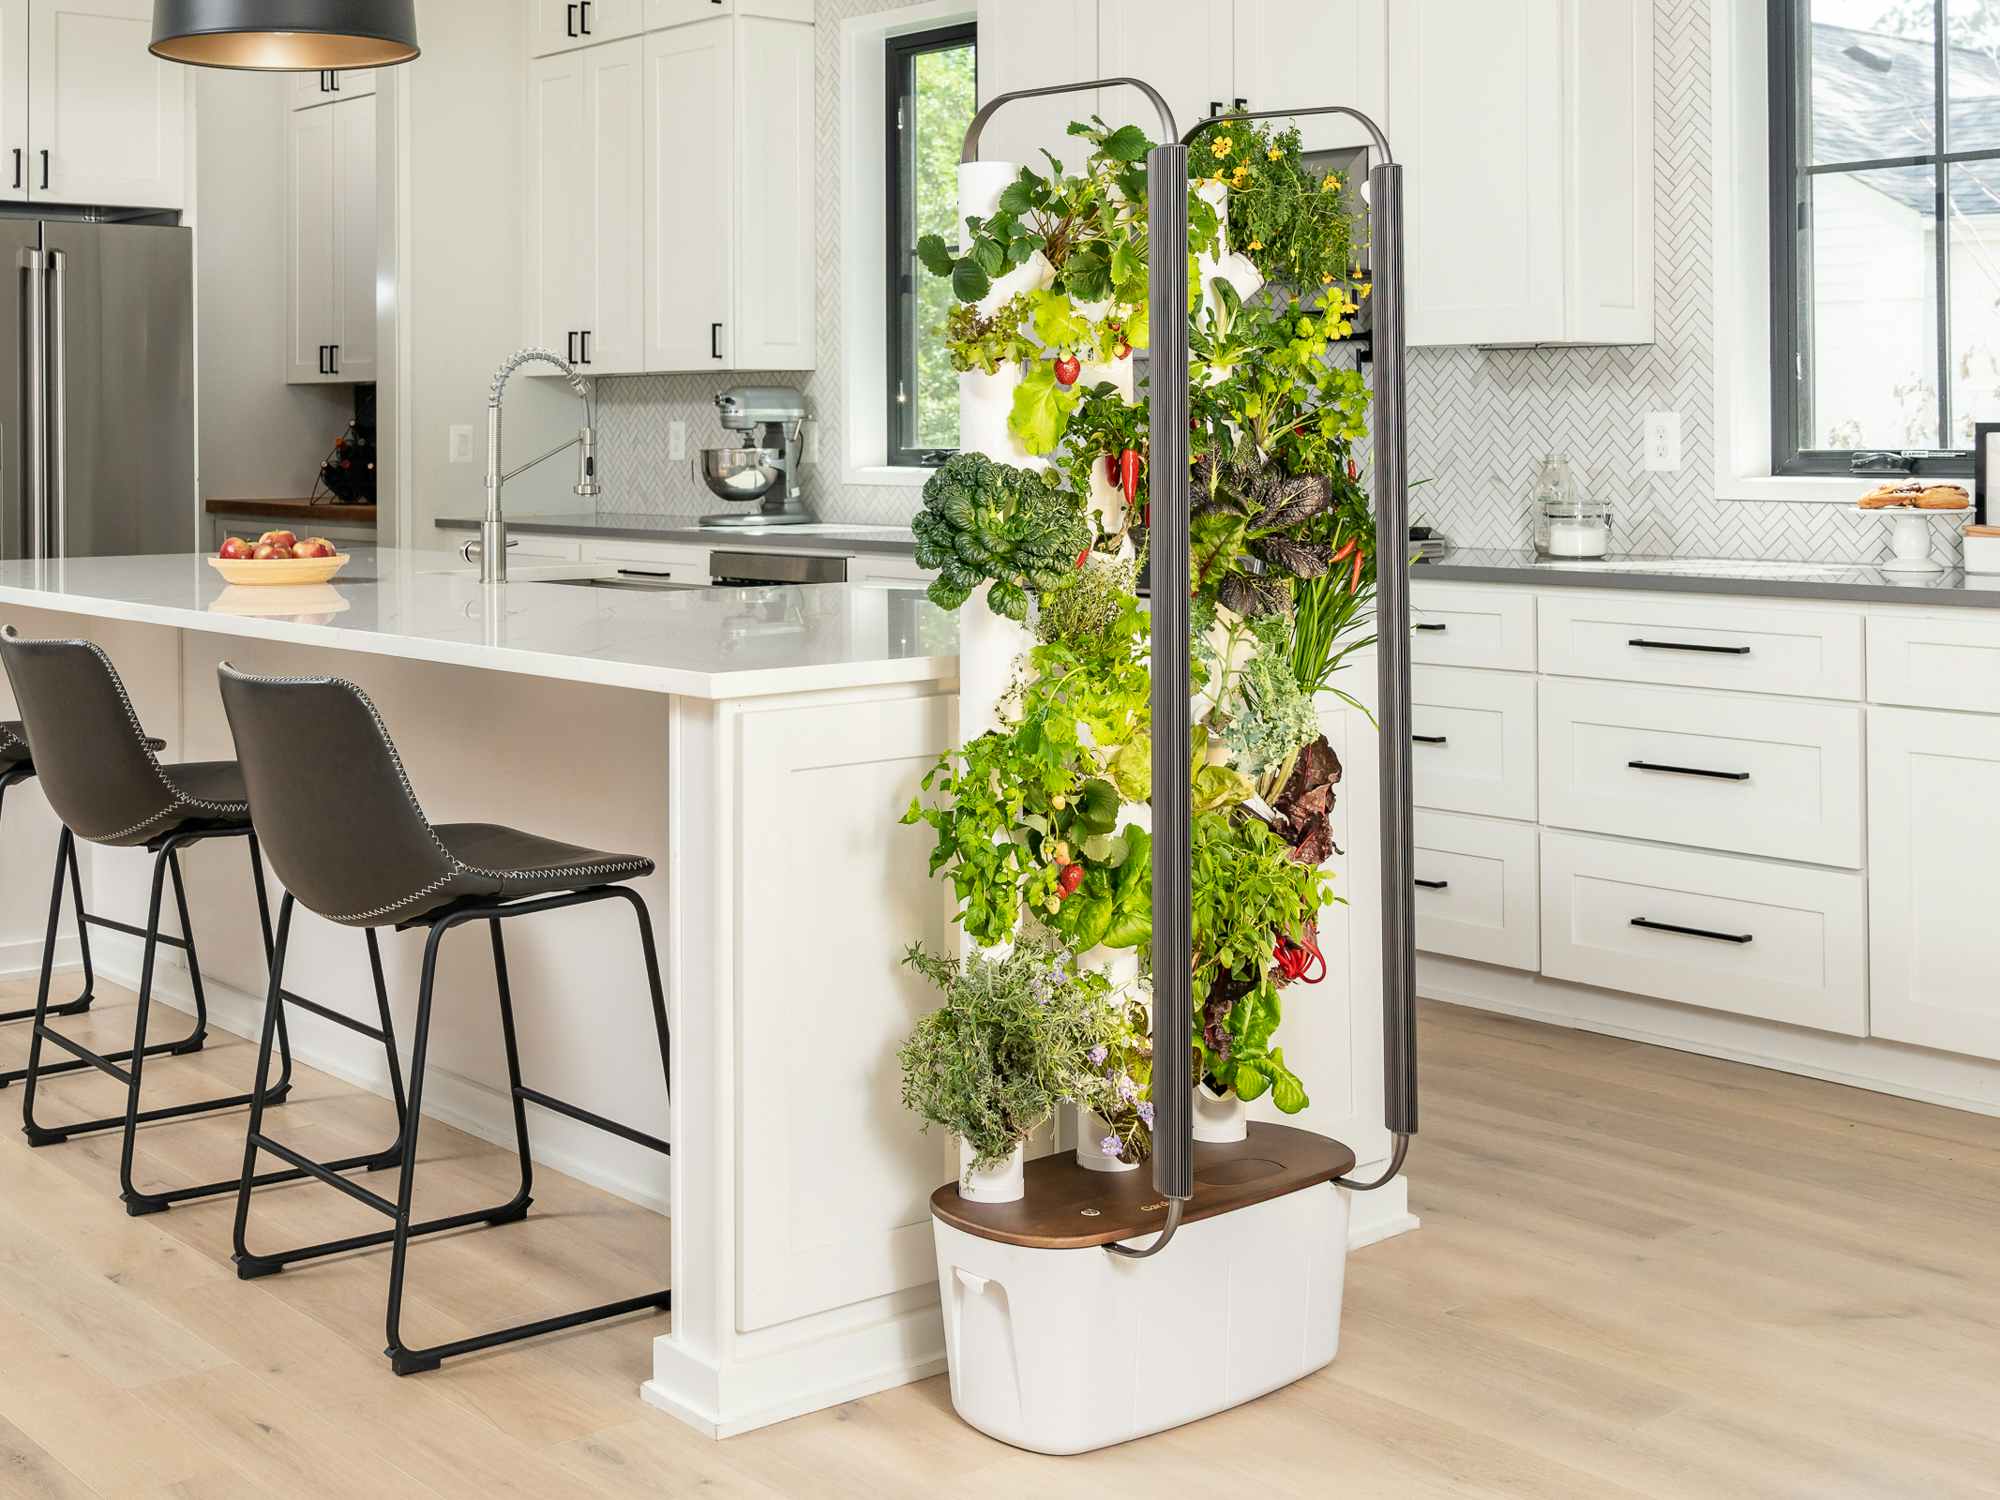 A Gardyn indoor vertical garden set up in a kitchen